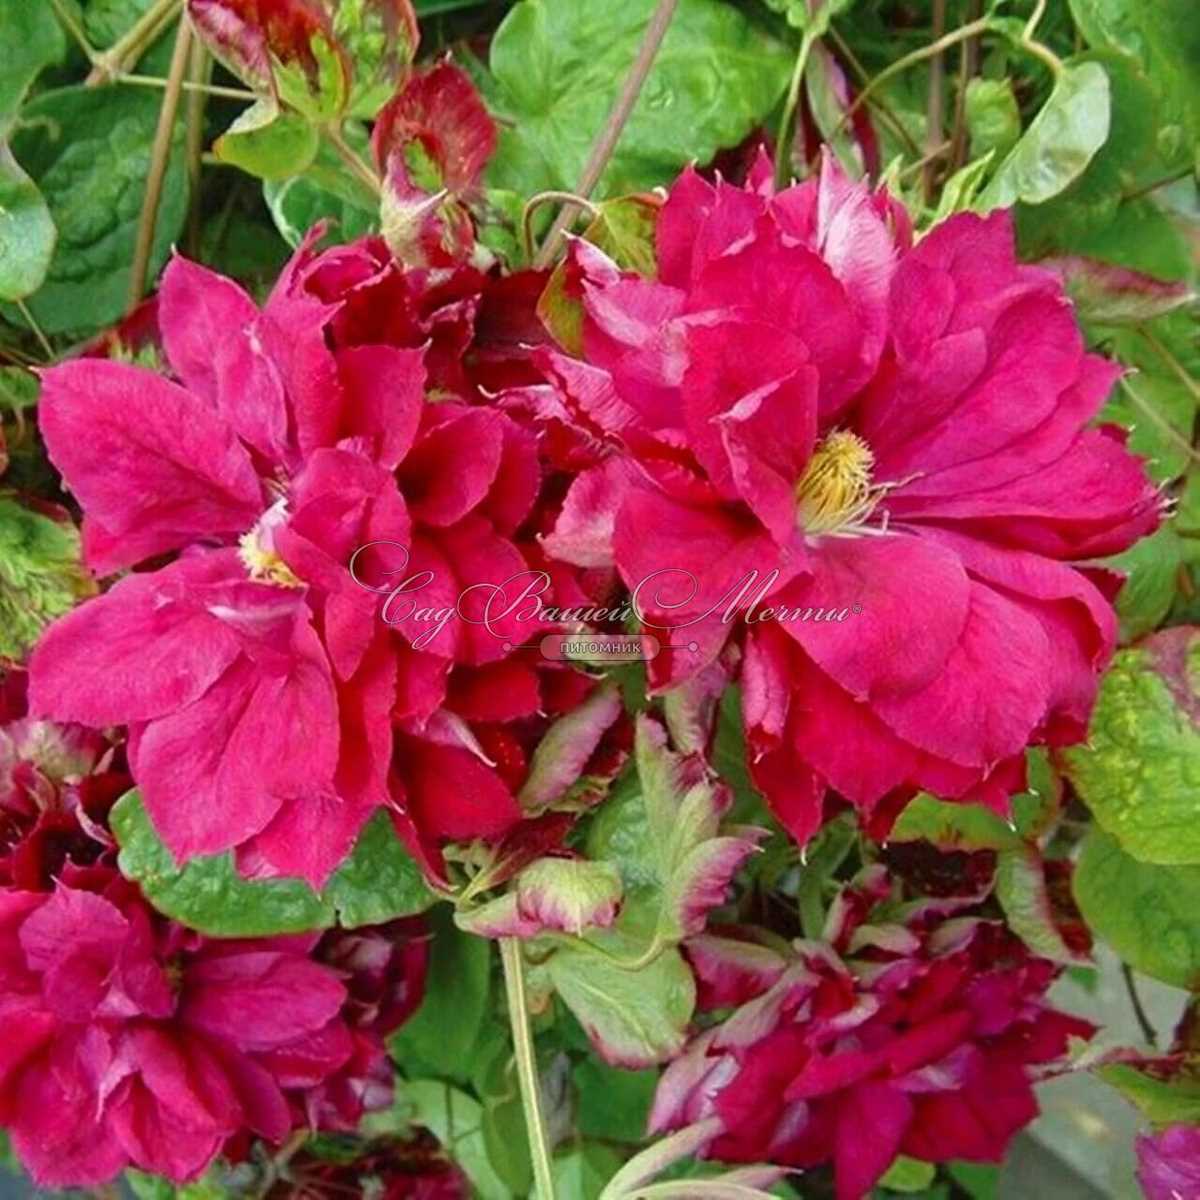 Клематис Ред Стар - удивительное растение, которое привлекает внимание не только своими крупными и роскошными цветами, но и своим уникальным названием. Это один из самых известных сортов клематиса, который пользуется огромной популярностью среди садоводов и цветоводов.